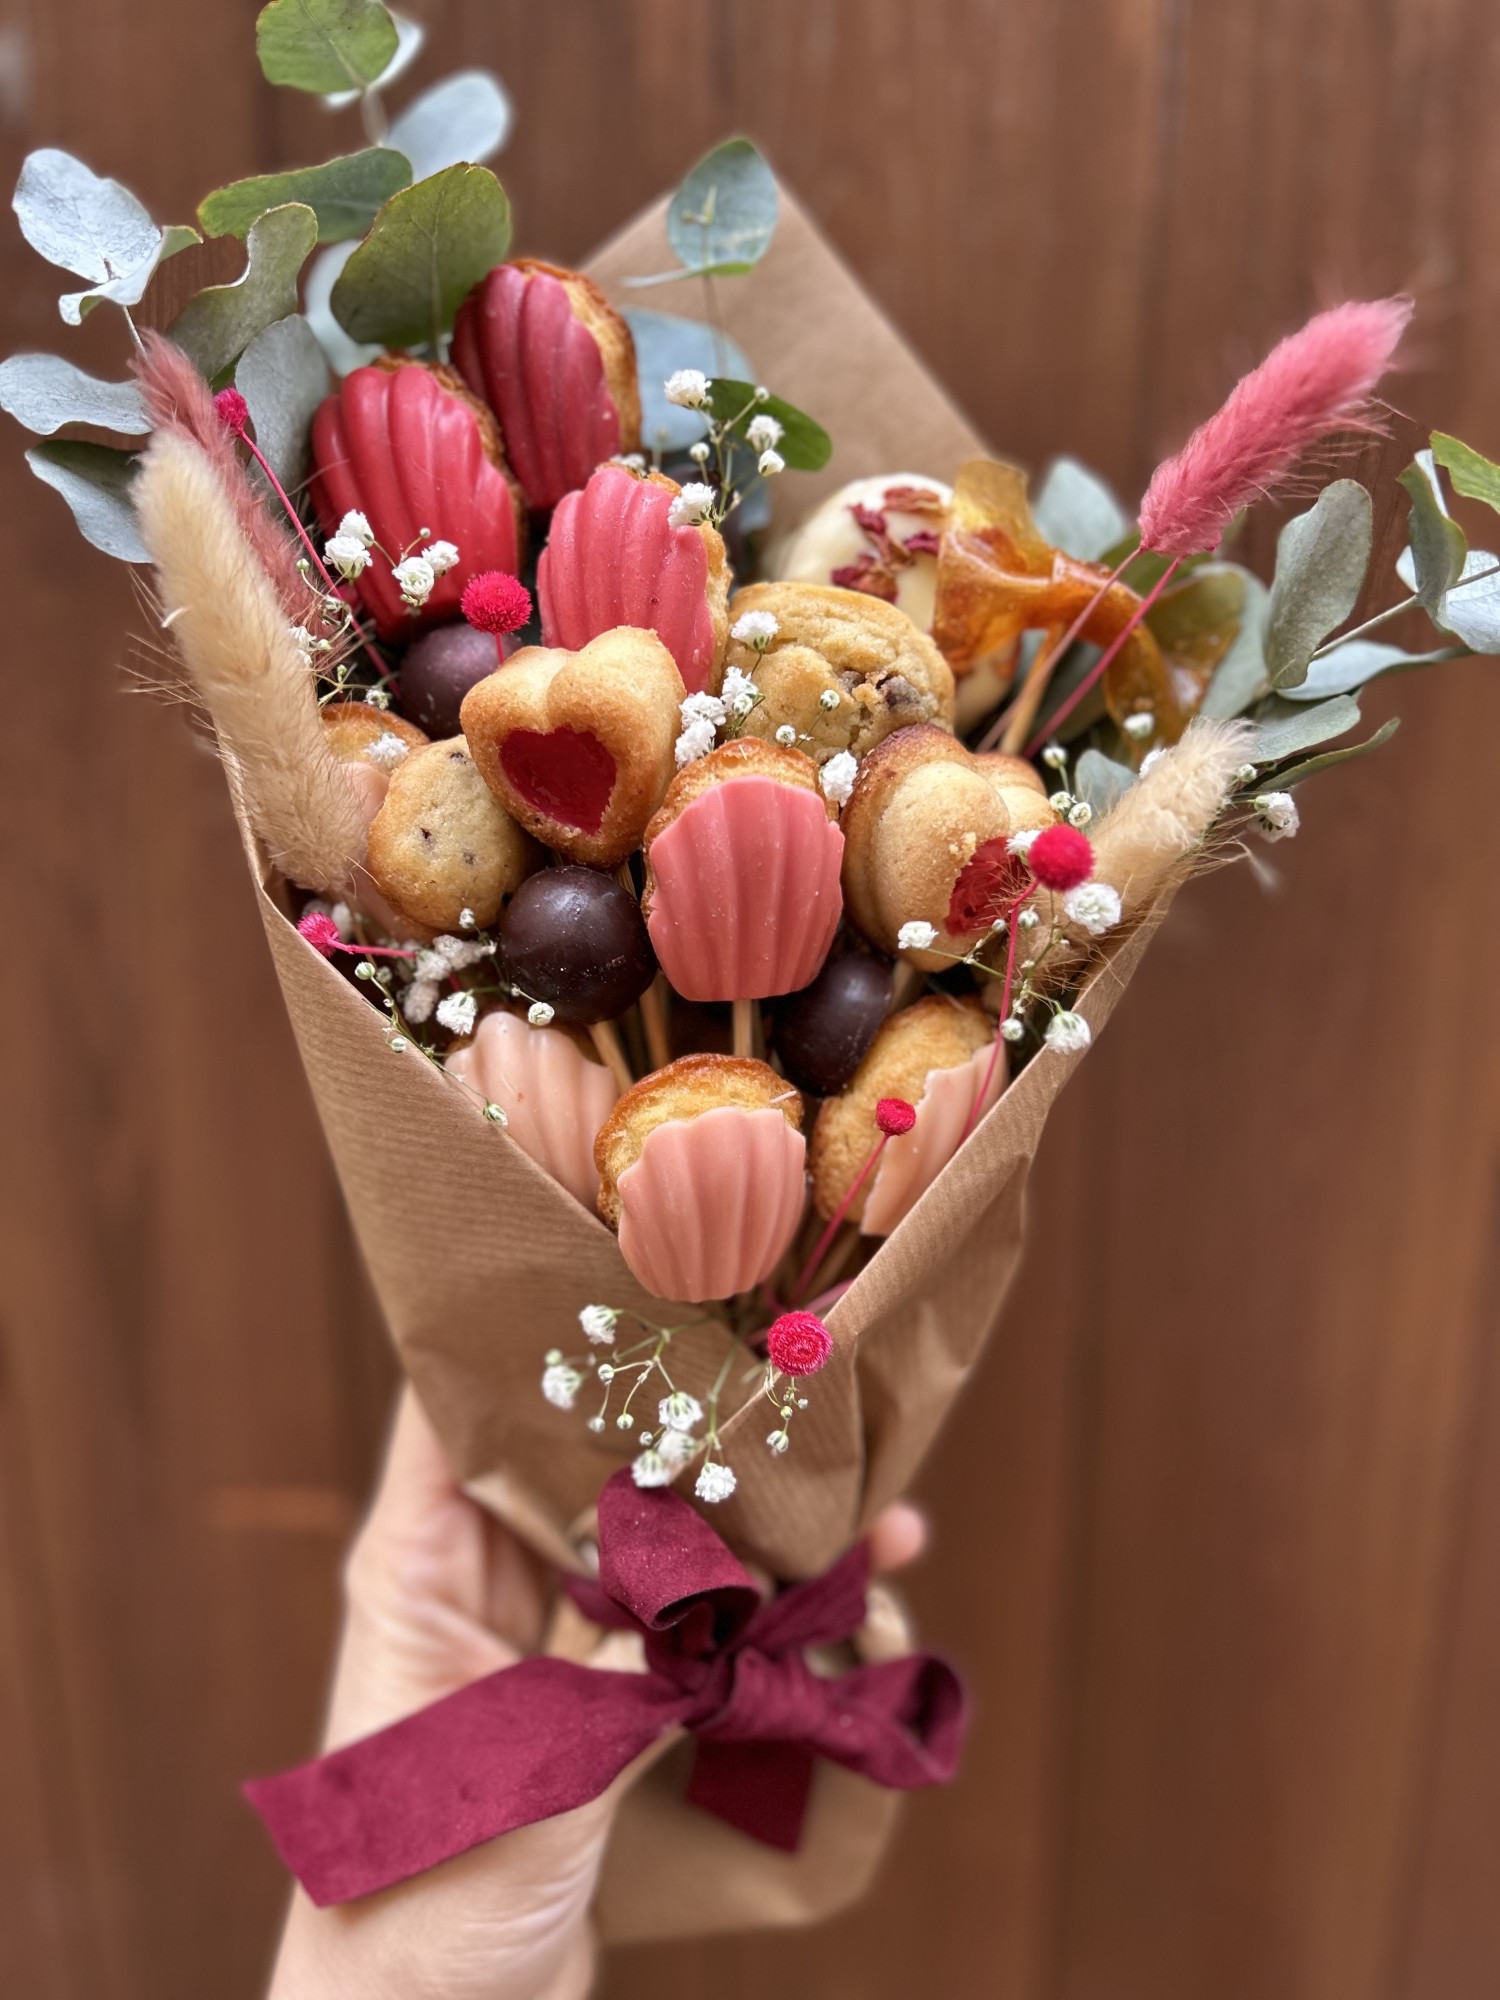 Toulouse - Idée cadeaux/Saint Valentin : Les bouquets à croquer de Maison Charlotte attendent les amoureux !